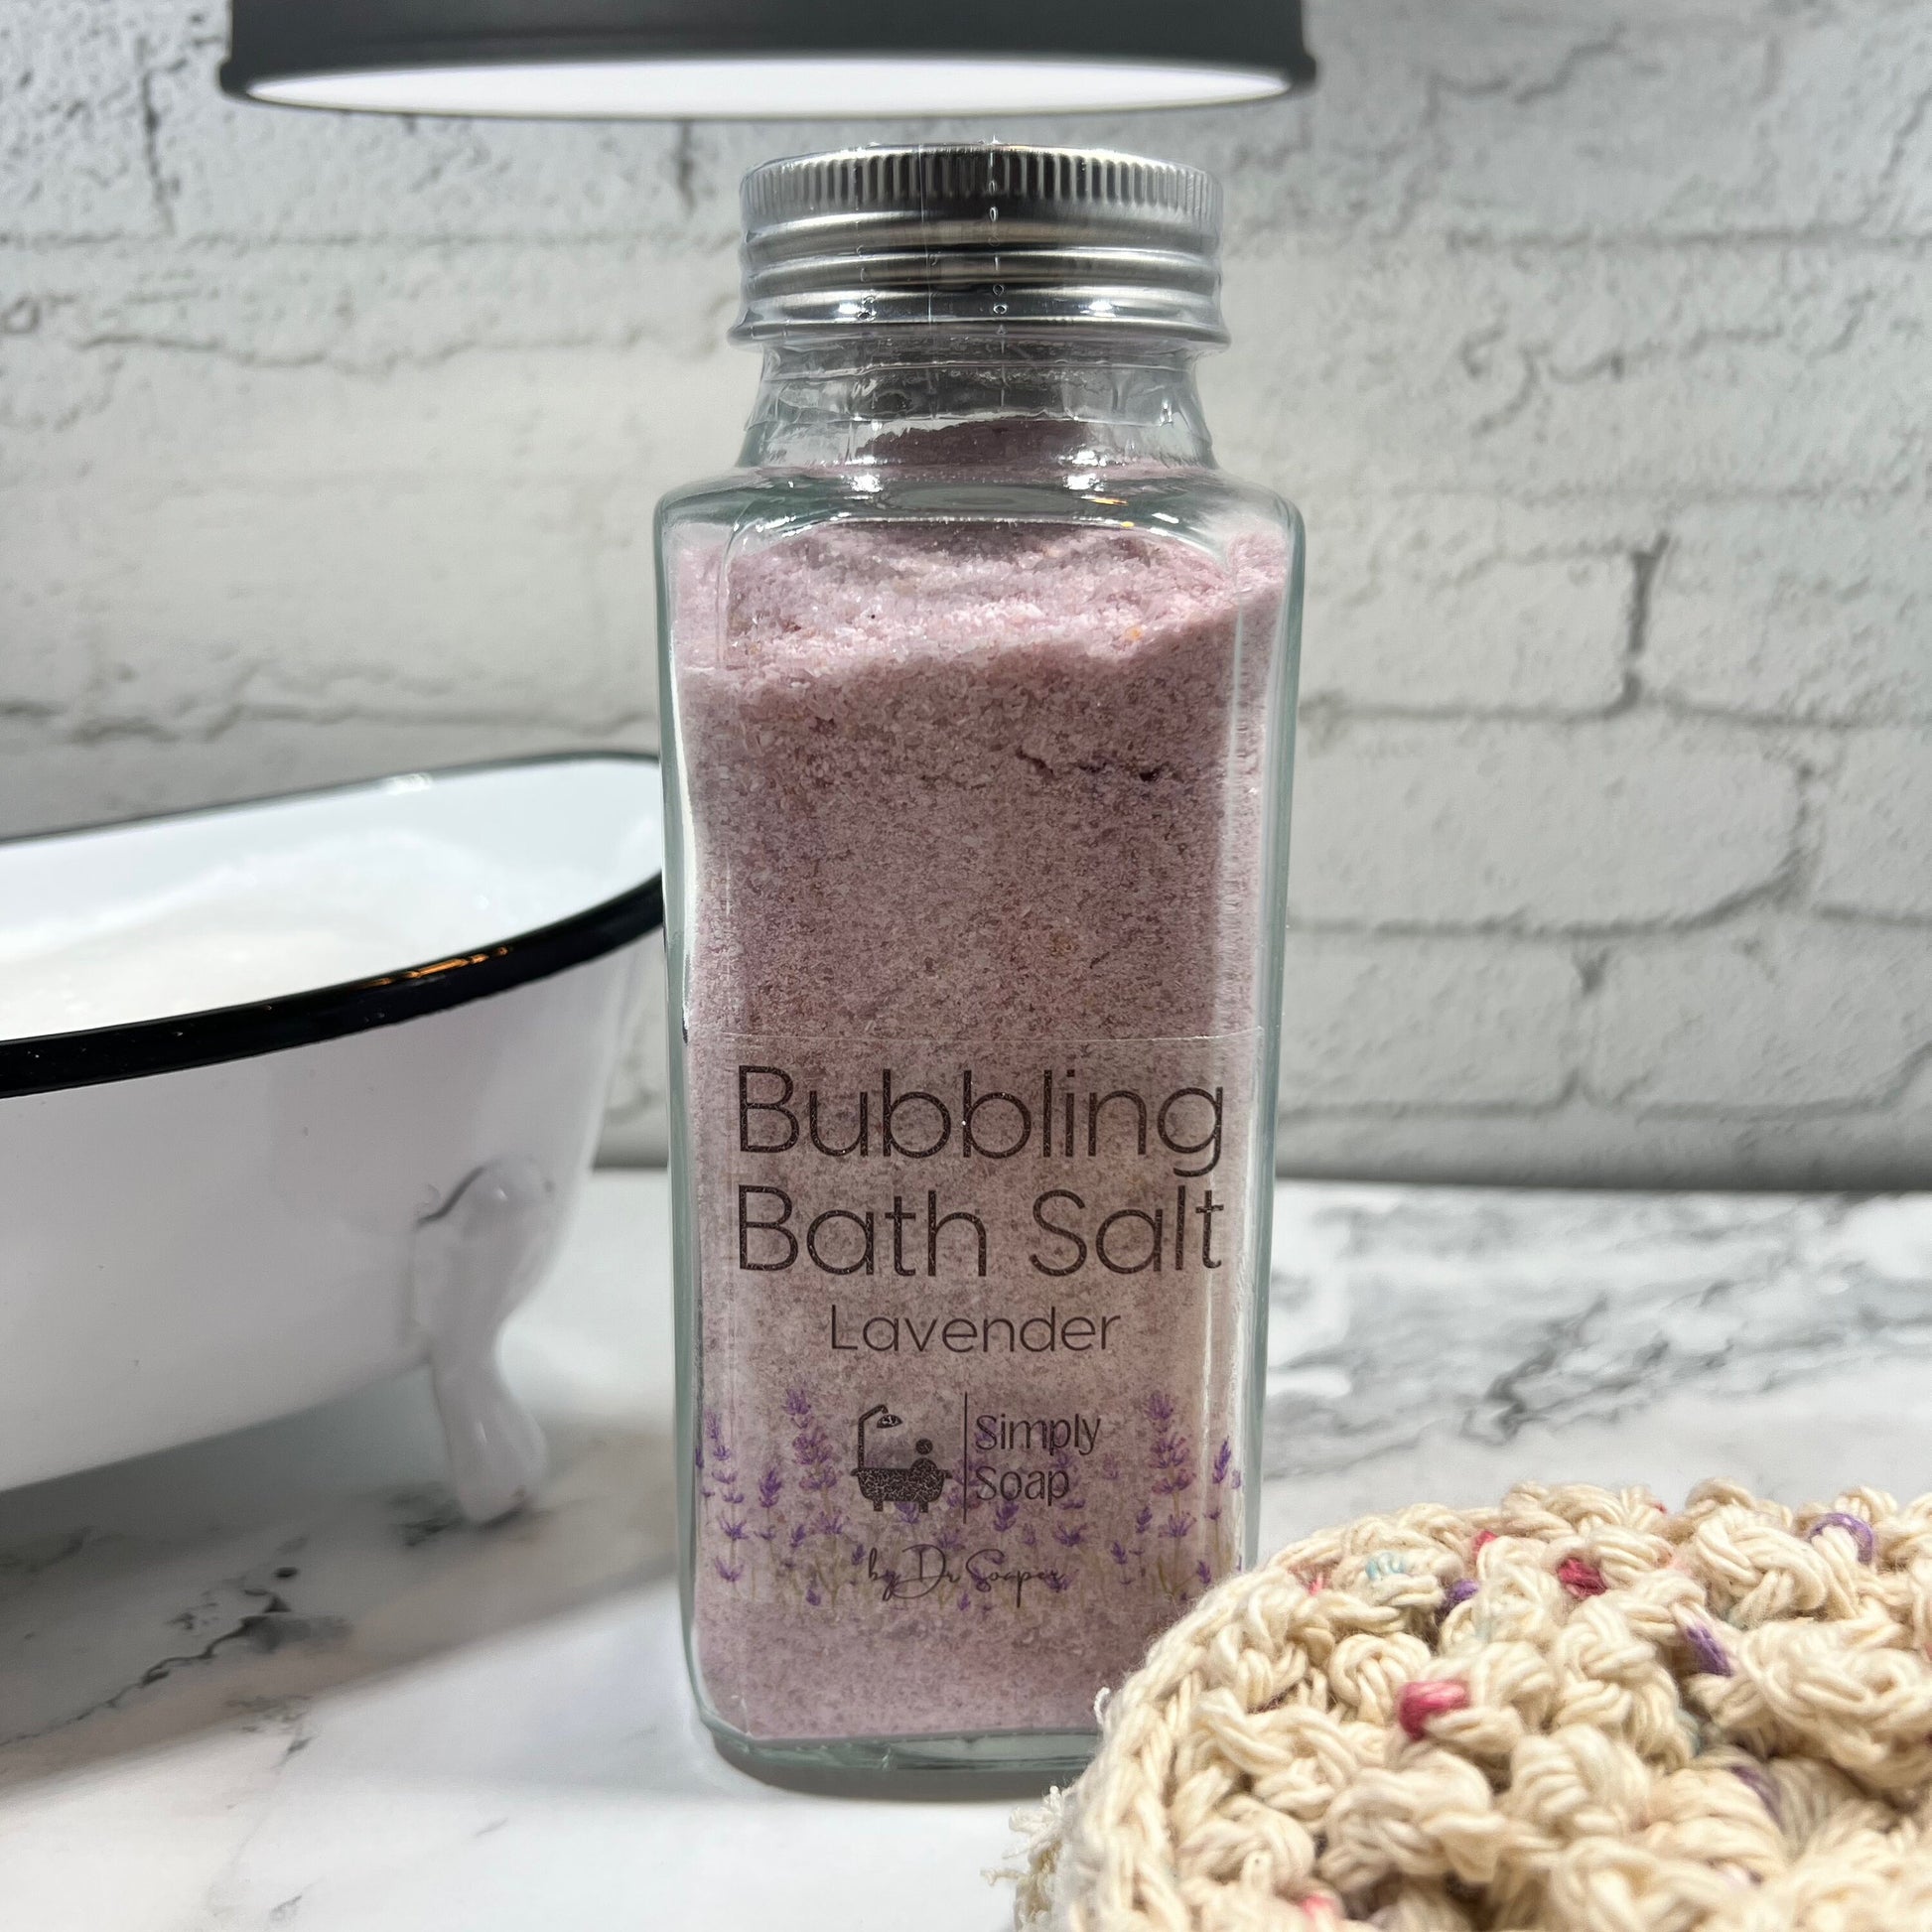 Bubbling Bath Salts with Himalyan Salt, Epsom Salt, and Colloidal Oatmeal